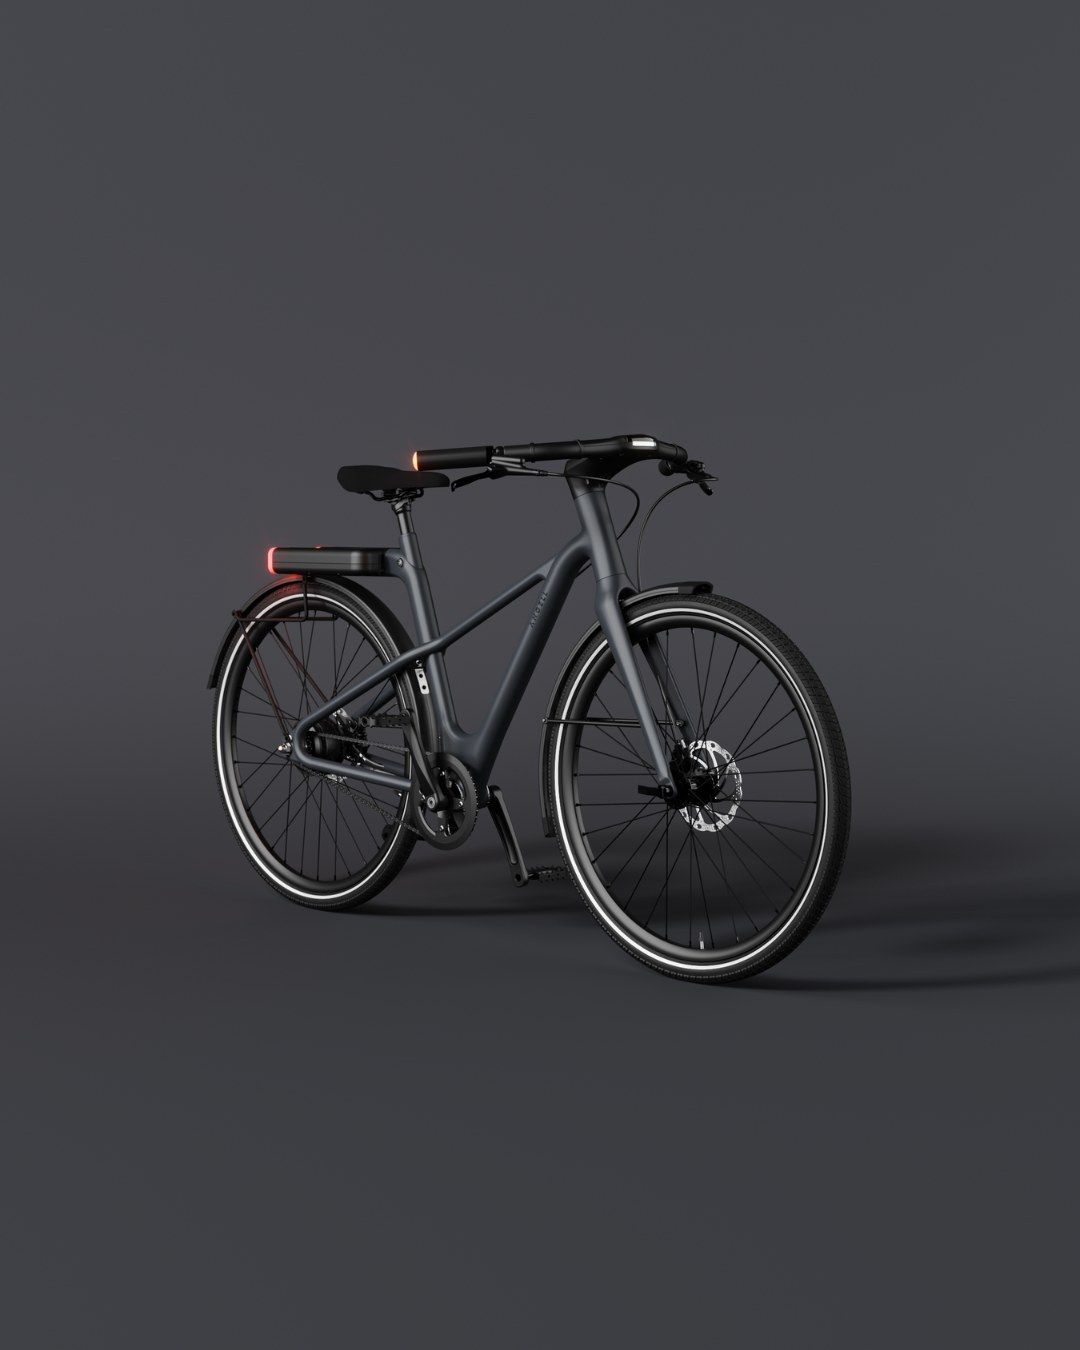 The Premium Minimalistic Cruiser Smart Bike by Angell